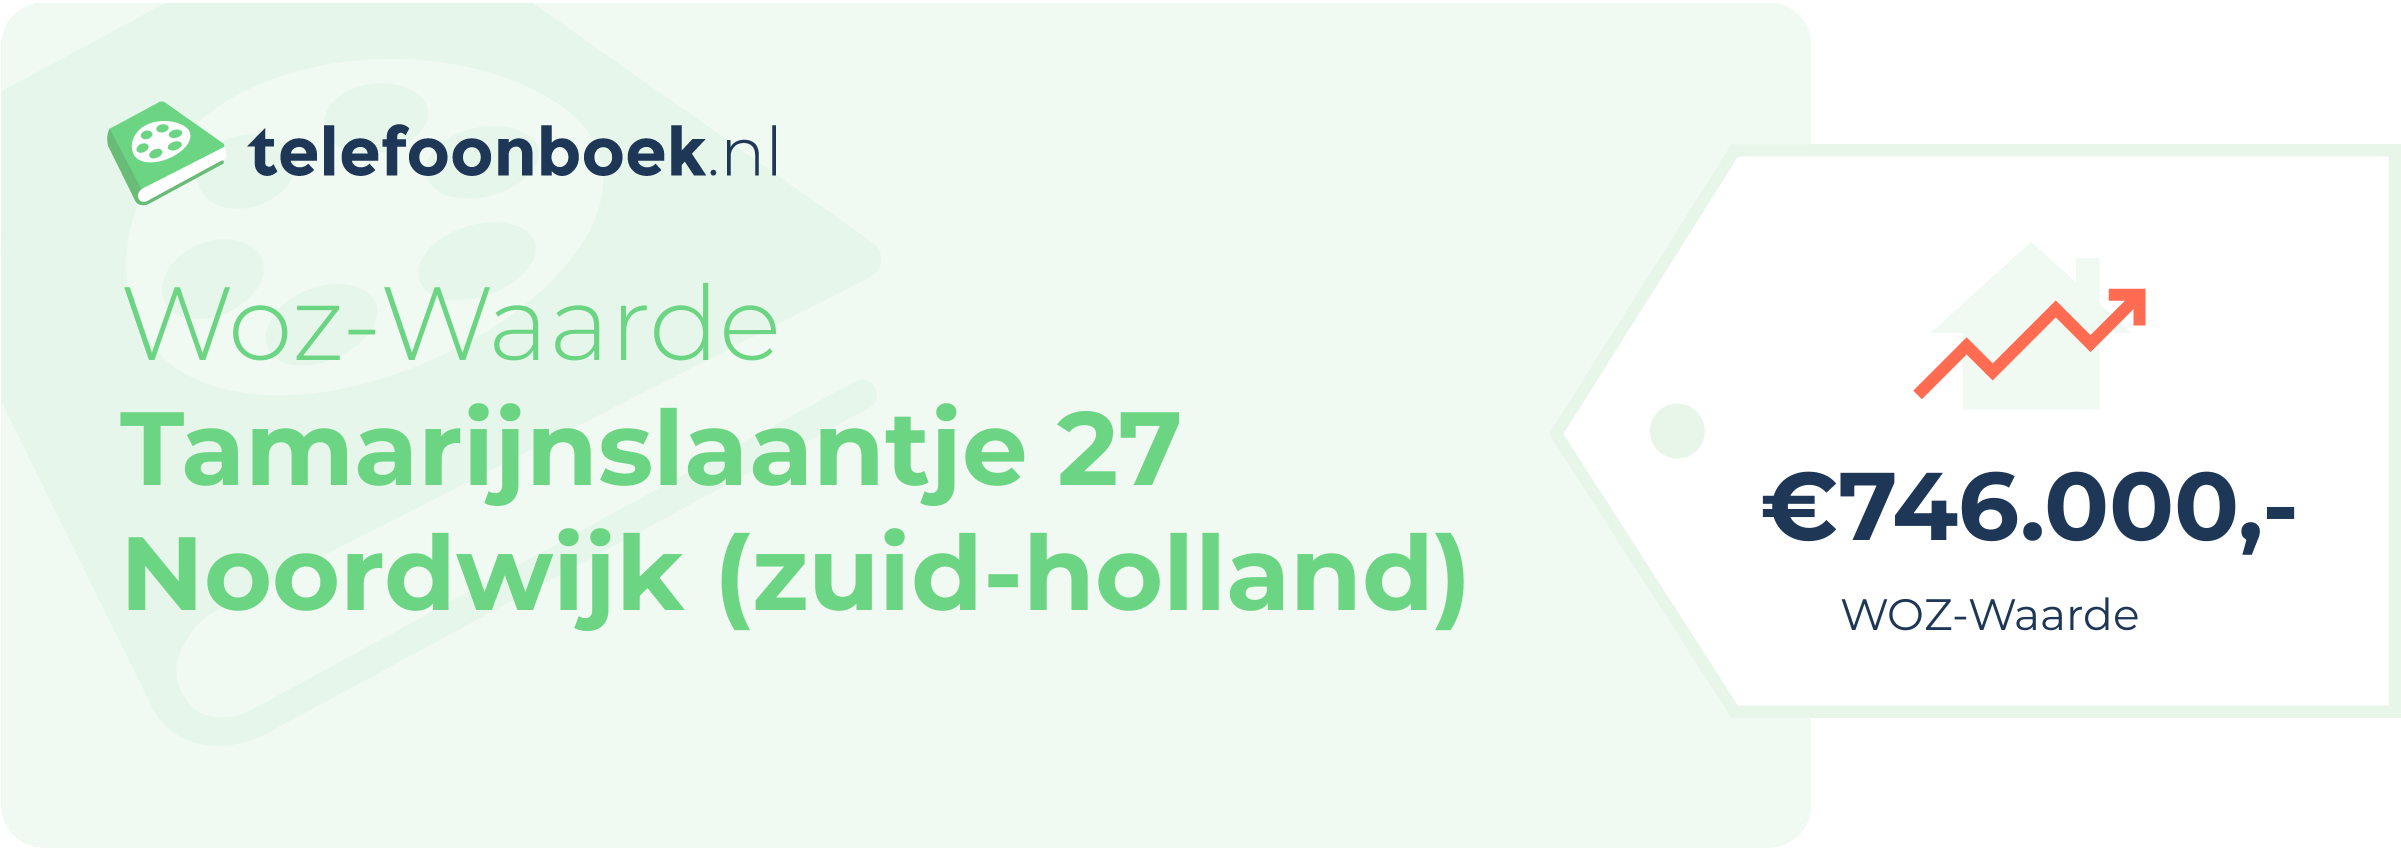 WOZ-waarde Tamarijnslaantje 27 Noordwijk (Zuid-Holland)